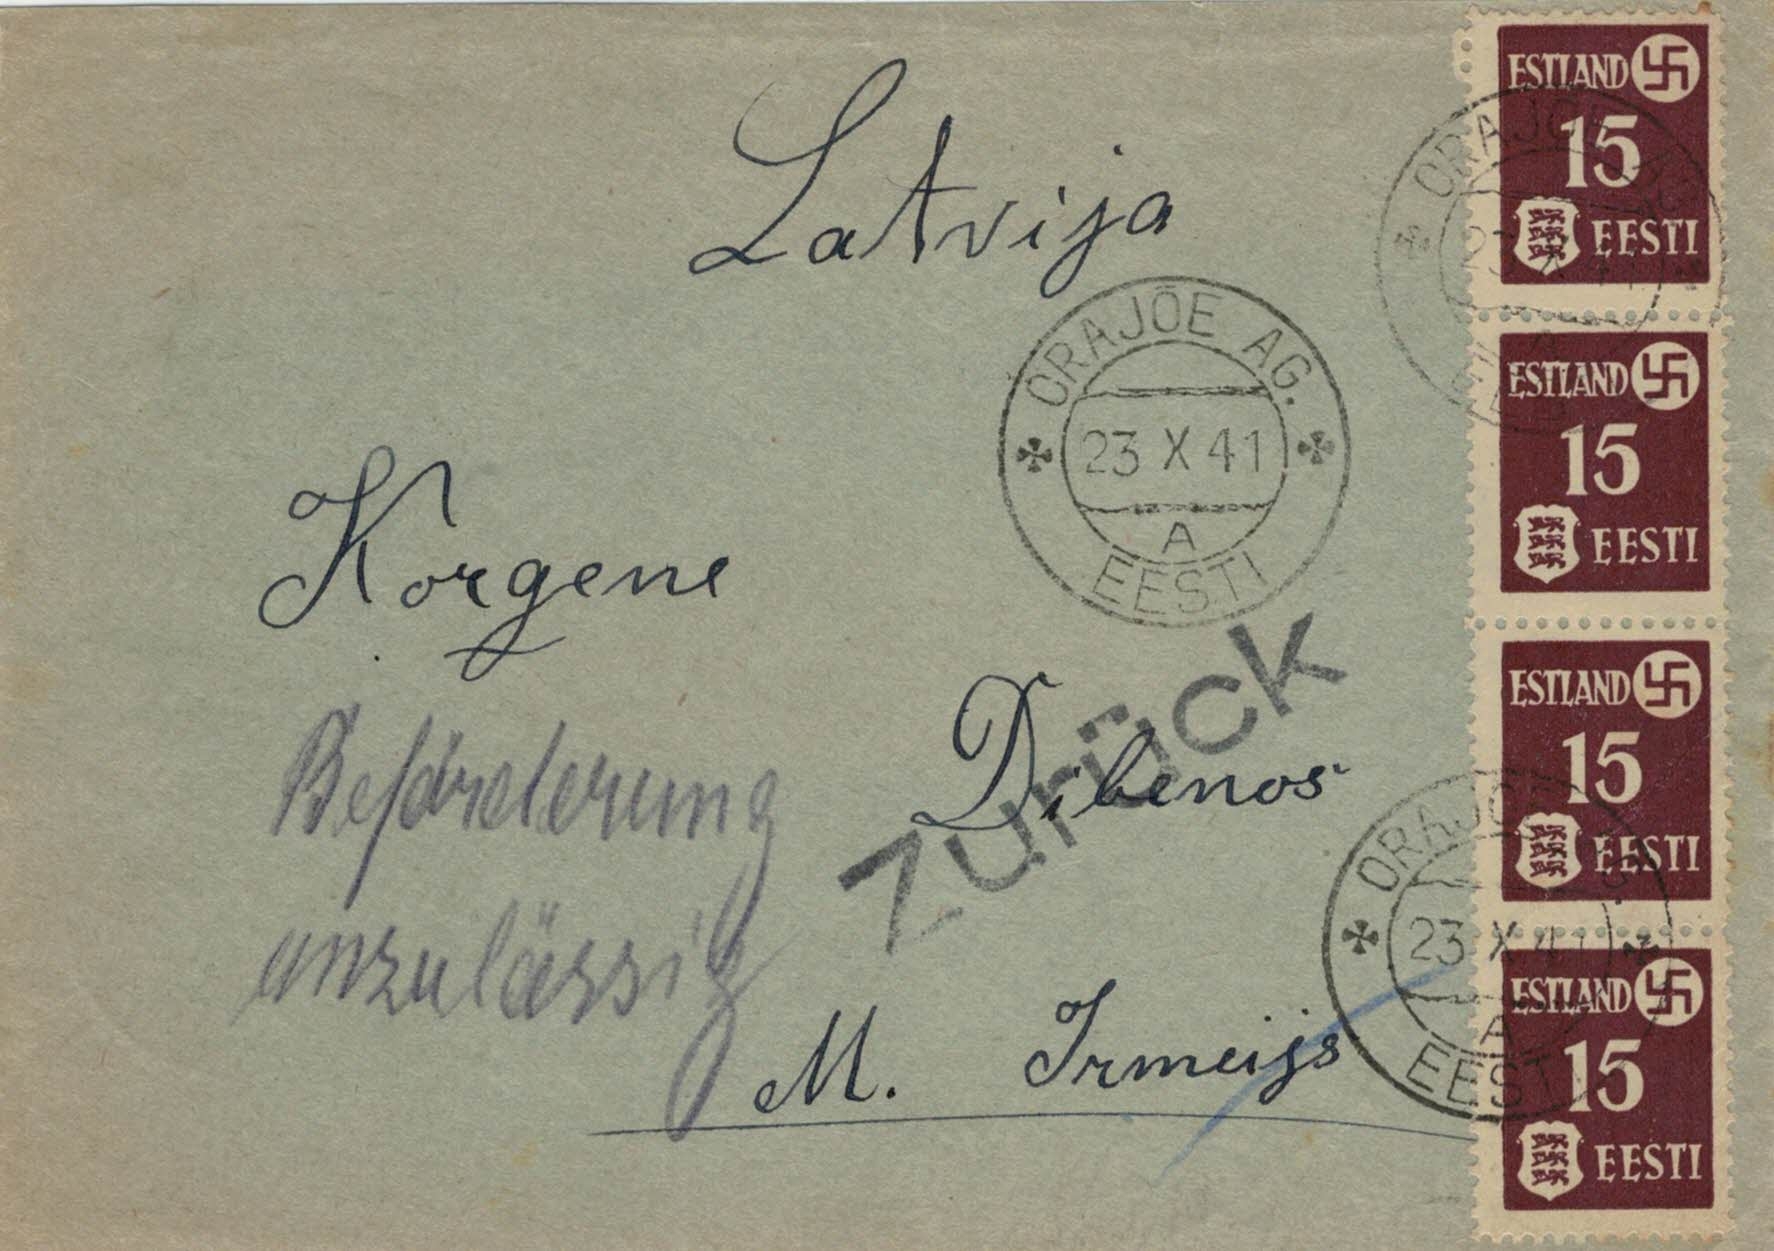 BACK, Letter Orajõe - Korgene 23 X 41; 10km distance; EST-LET only as of 15.1.42